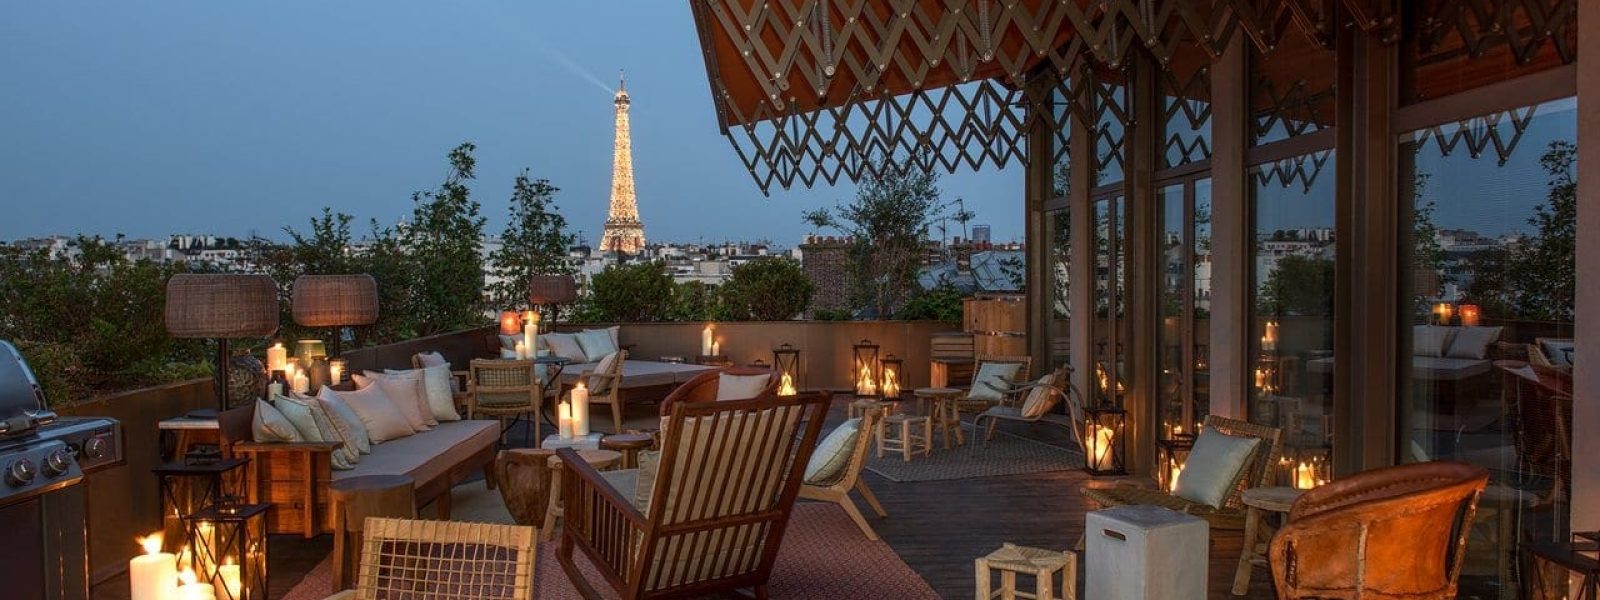 Dakterras hotel Brach in Parijs met uitzicht op Eiffeltoren